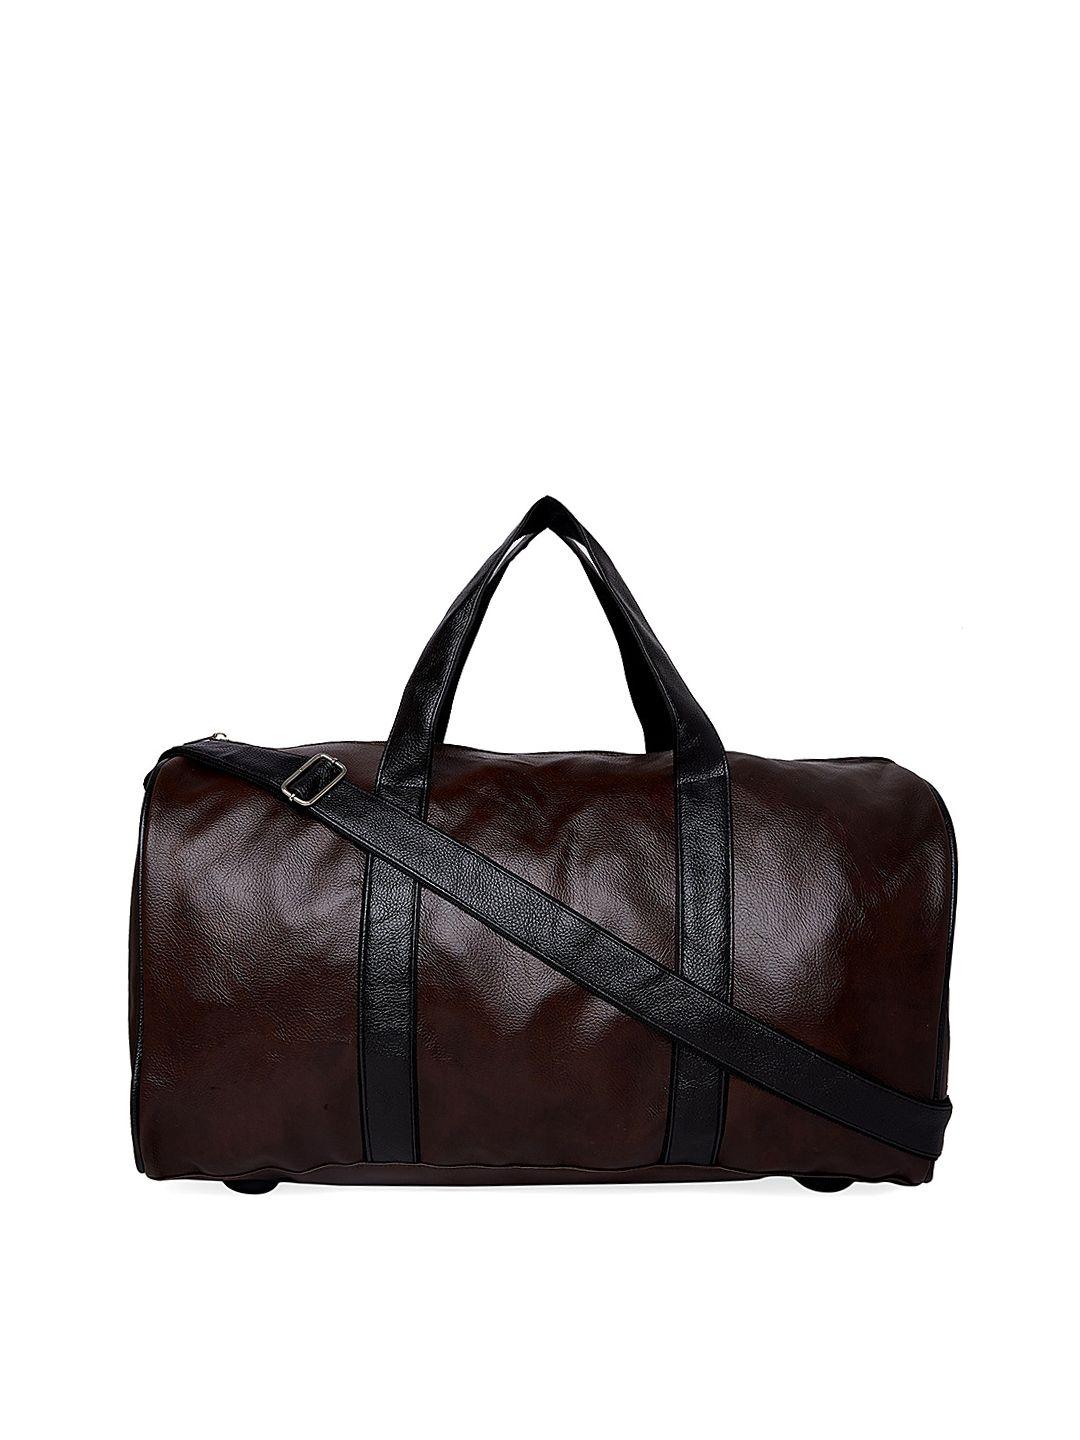 mboss brown solid duffel bag